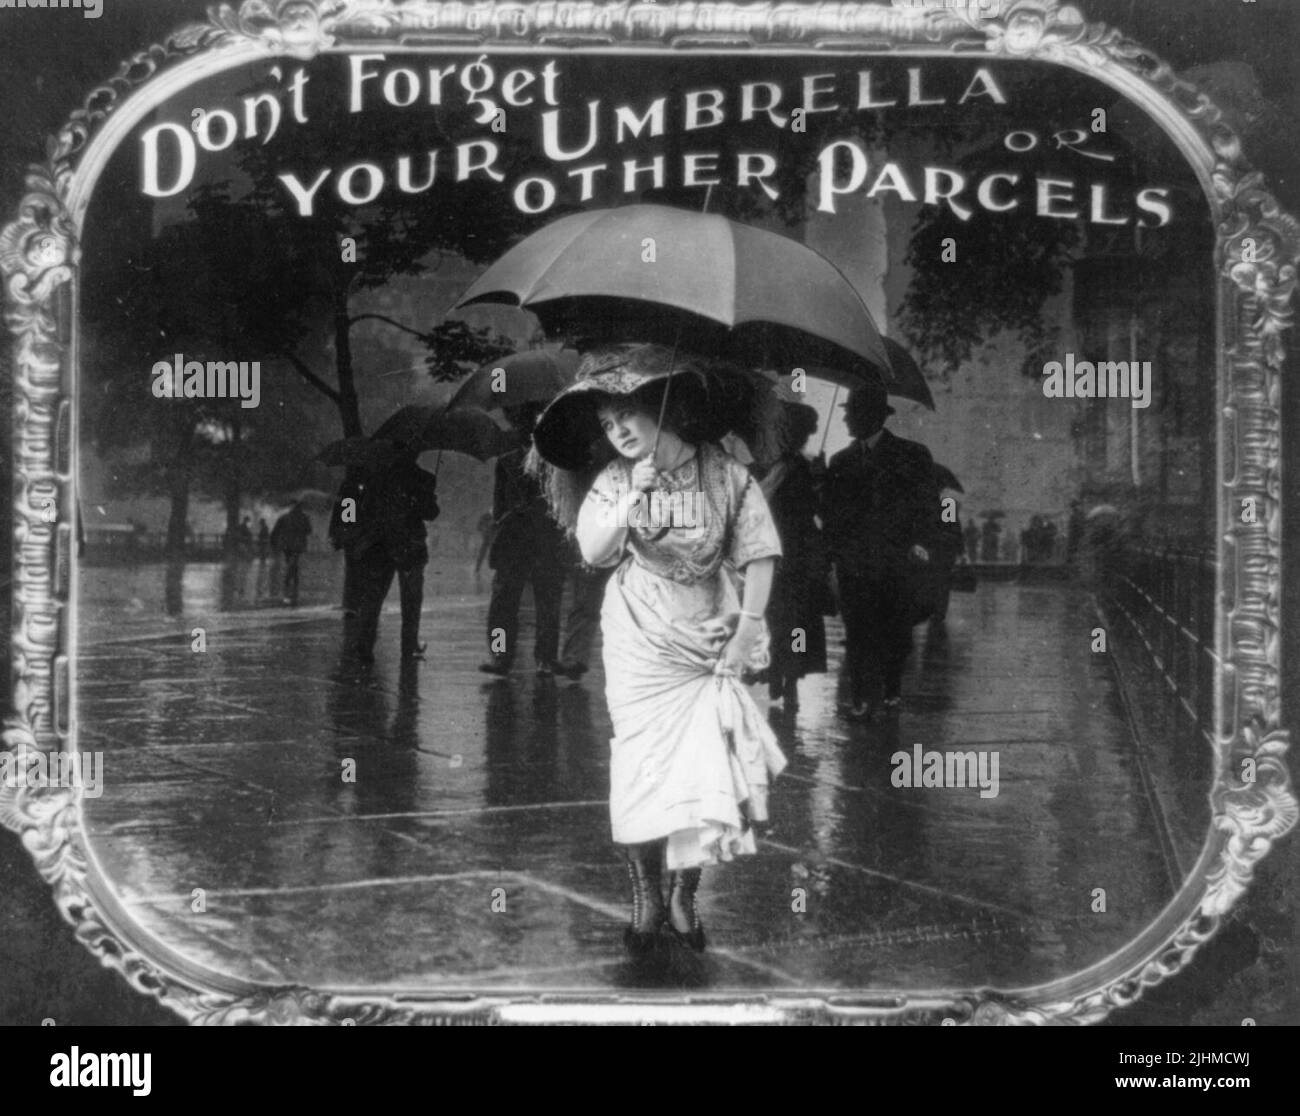 Non dimenticare il tuo ombrello o altri pacchi - la foto mostra una donna che tiene un ombrello durante l'attraversamento di una strada bagnata. Stampa su carta positiva da slide lanterna utilizzata nelle sale cinematografiche come annuncio. Foto Stock